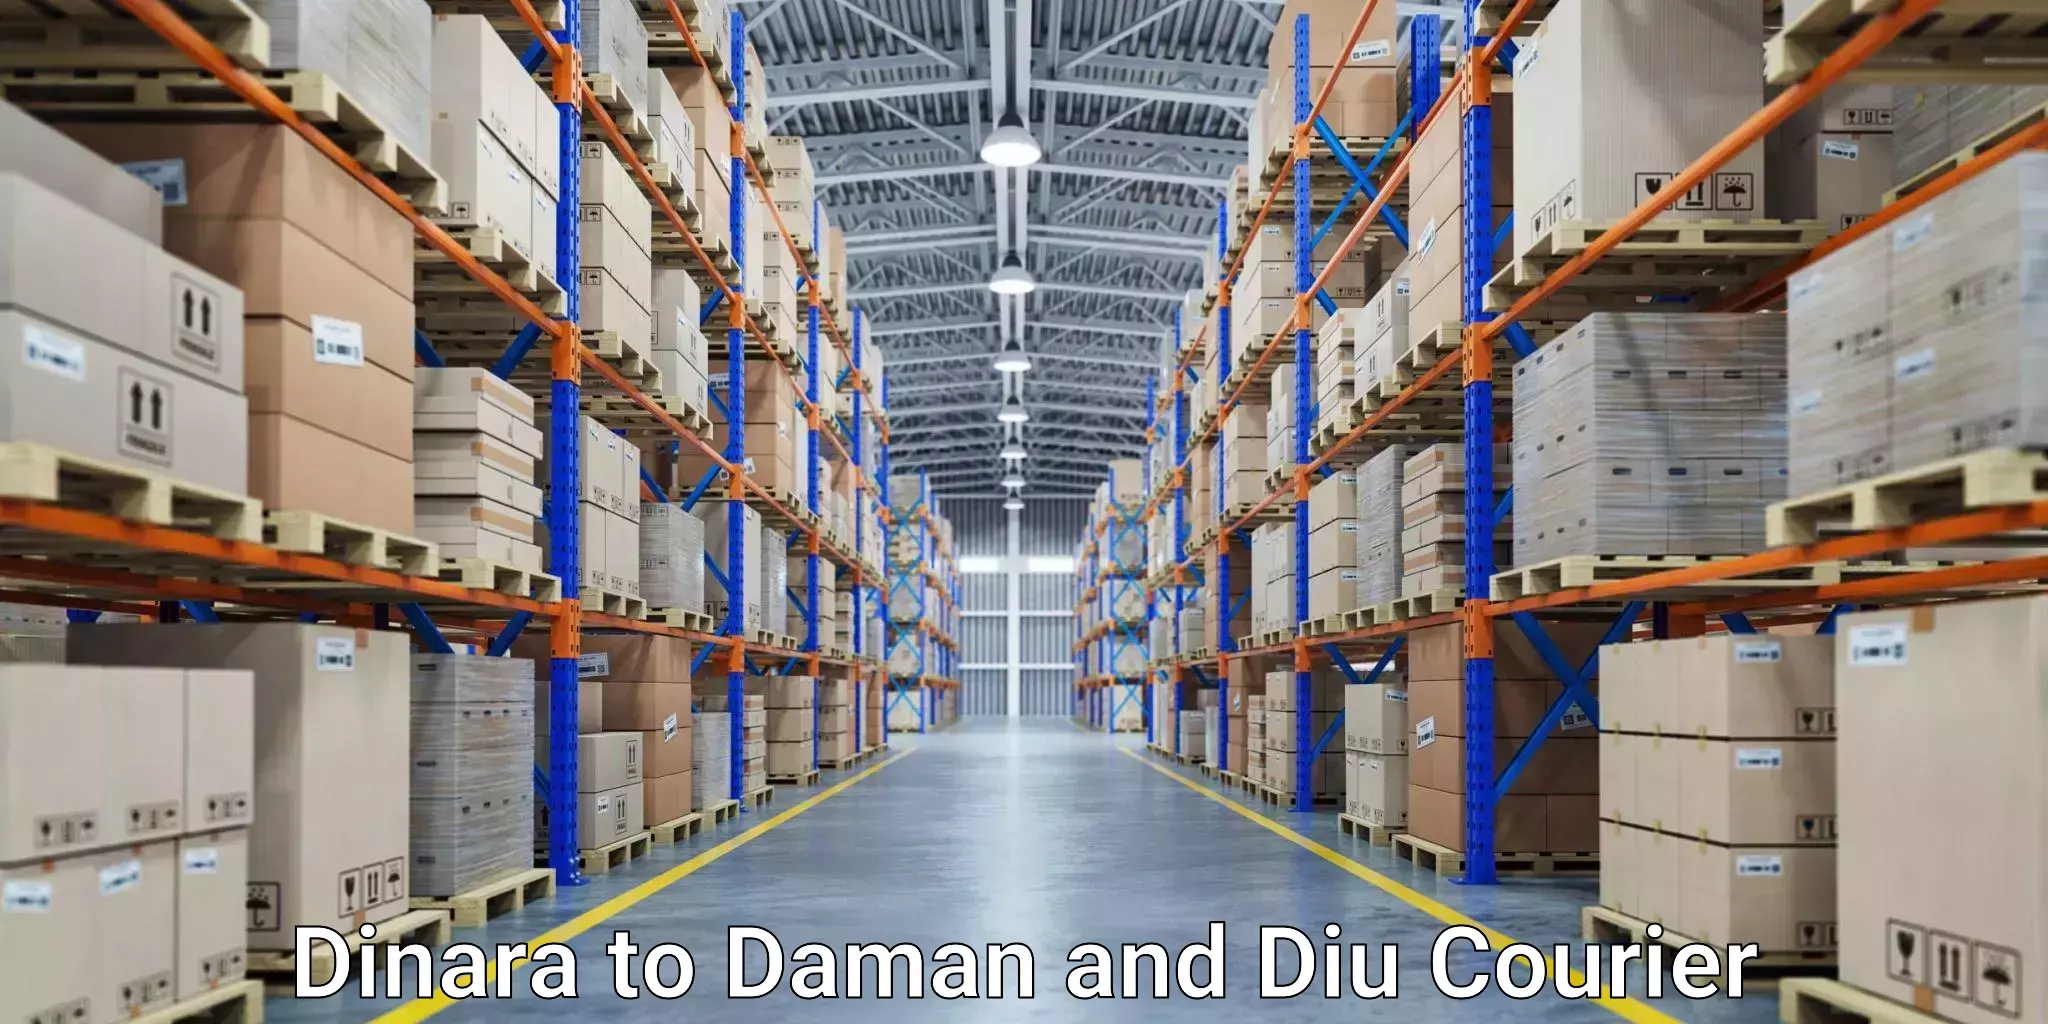 Efficient courier operations Dinara to Daman and Diu